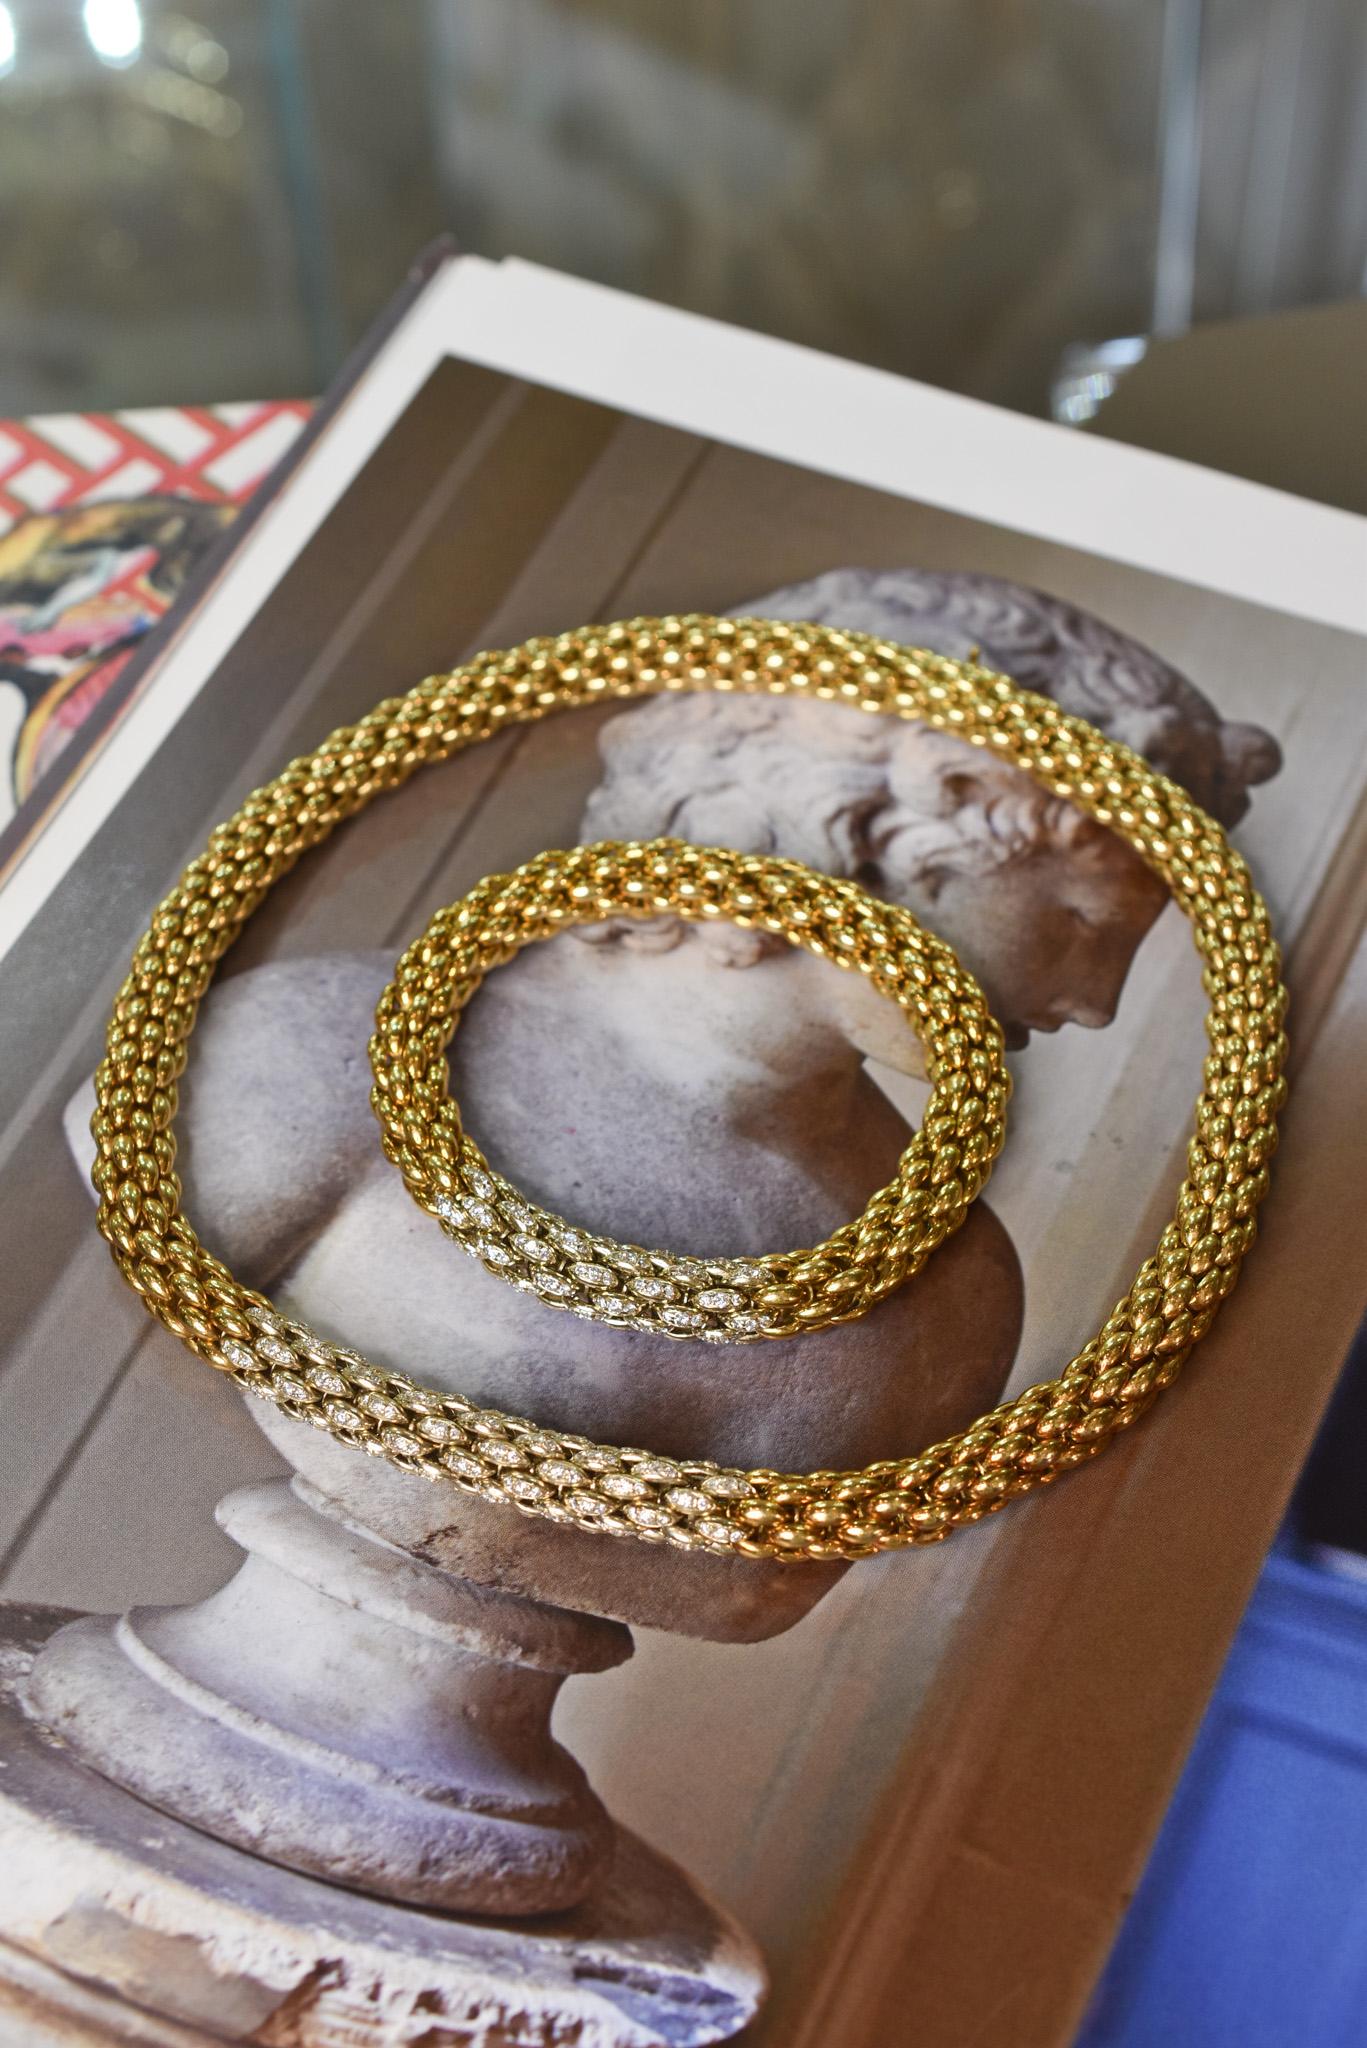 Röhrenförmige Halskette und Armband aus 18-karätigem Gelbgold mit Diamantakzenten im Mittelteil. Hergestellt in Italien, um 1970.

Länge der Halskette: 40 cm
Länge des Armbands: 20 cm